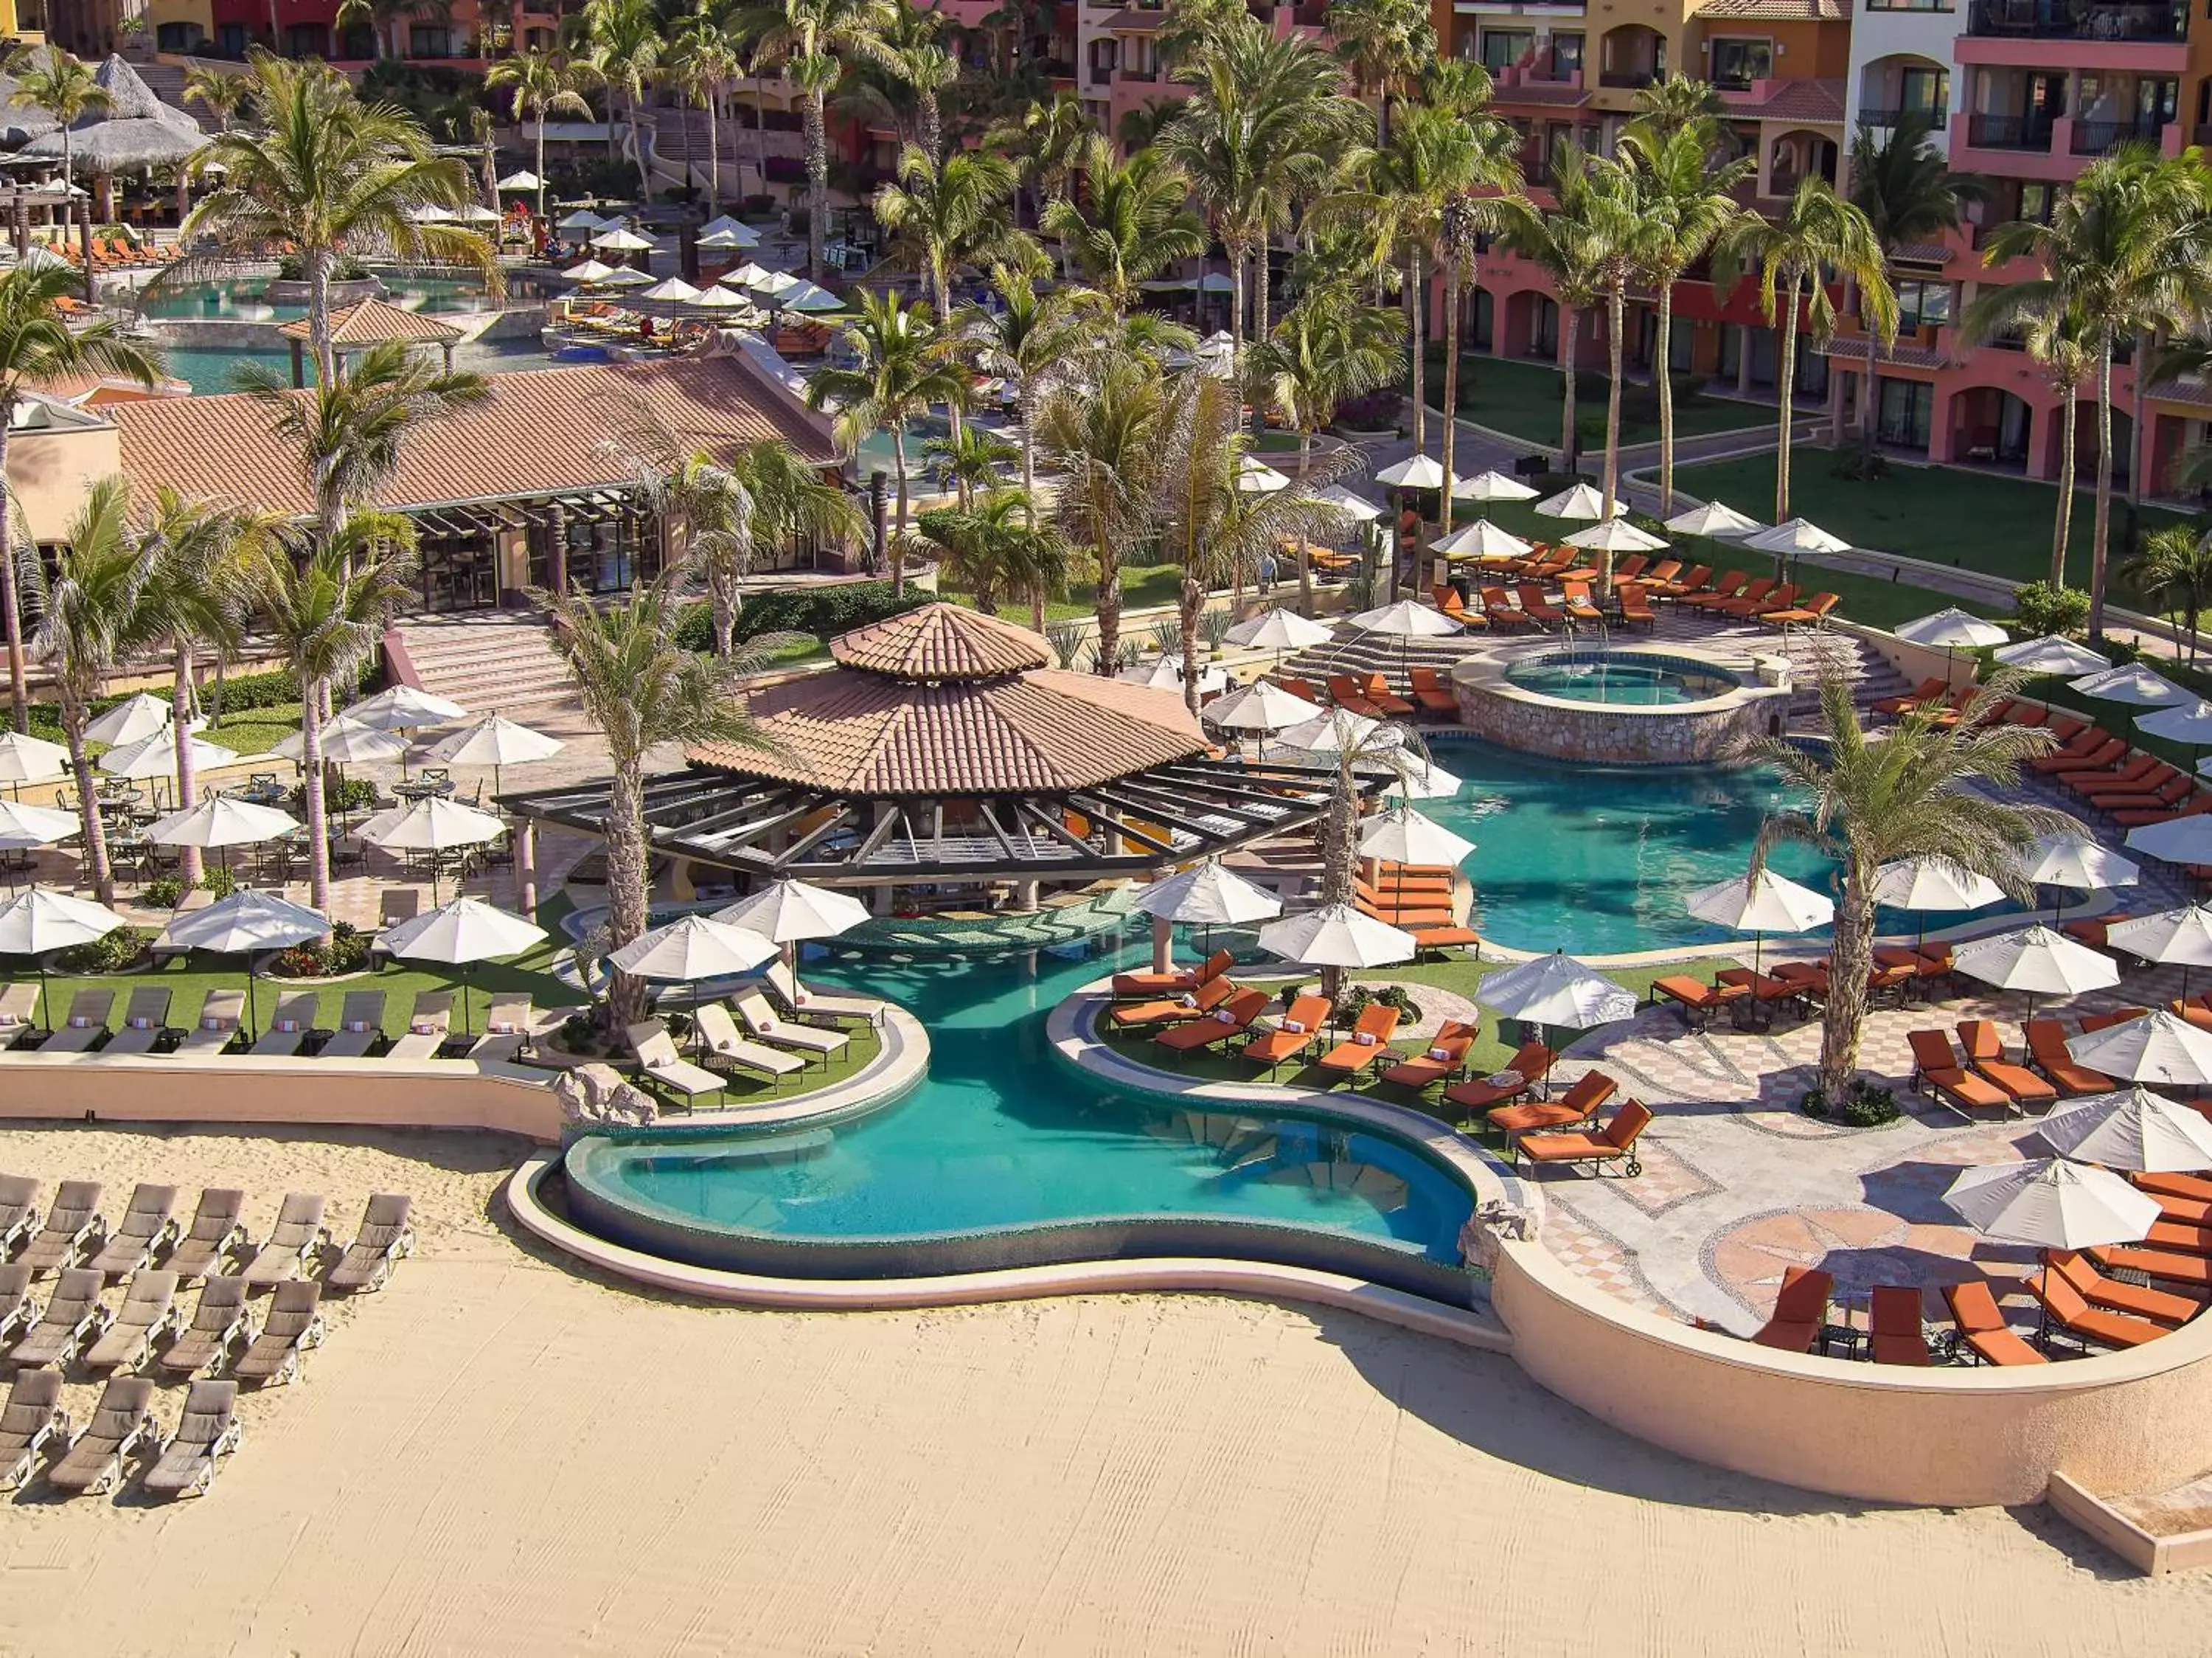 Pool view, Bird's-eye View in Playa Grande Resort